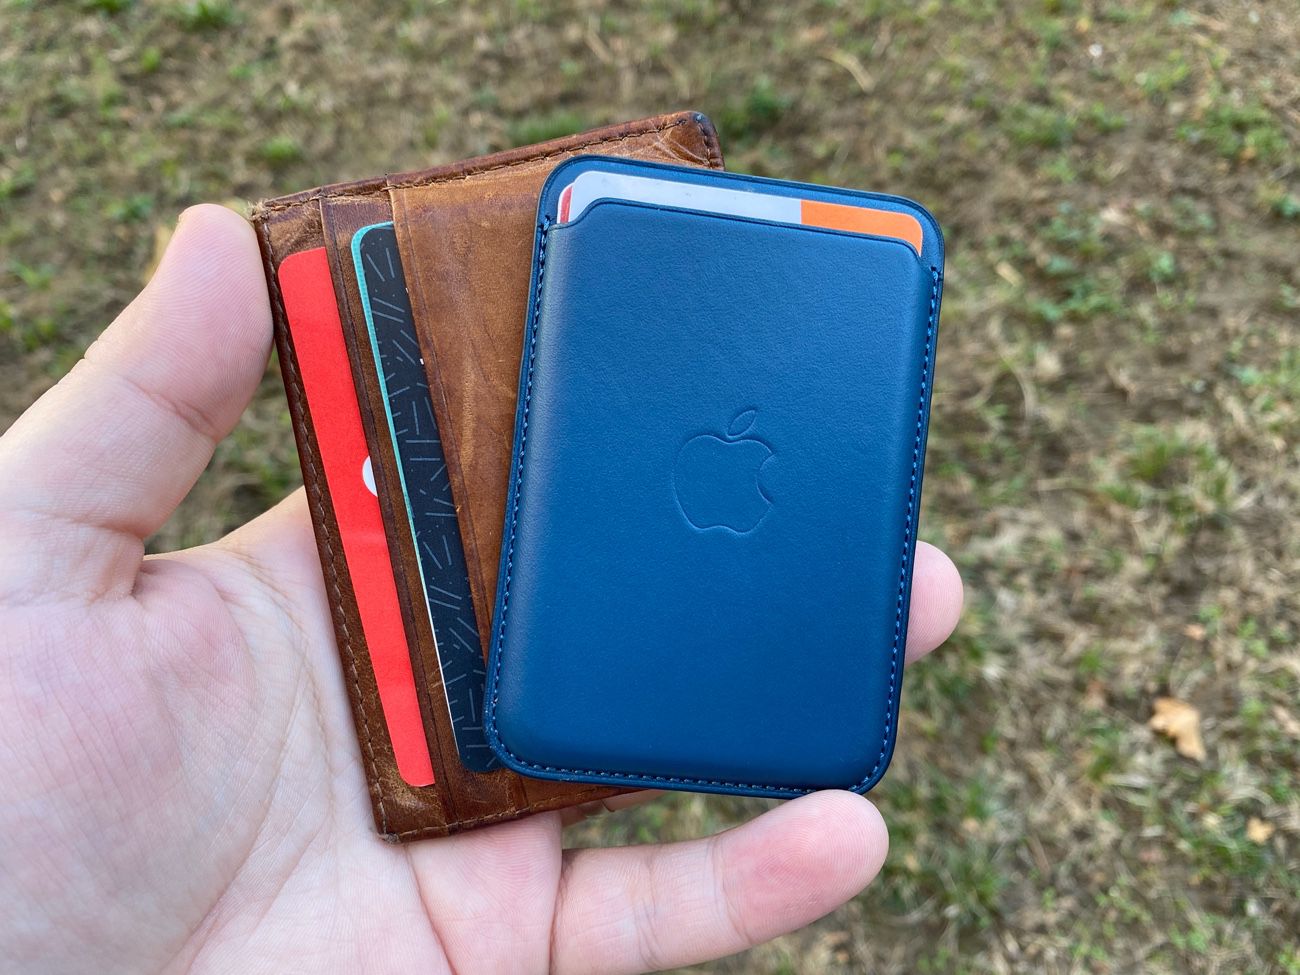 Présentation du Porte-cartes MagSafe en cuir d'Apple